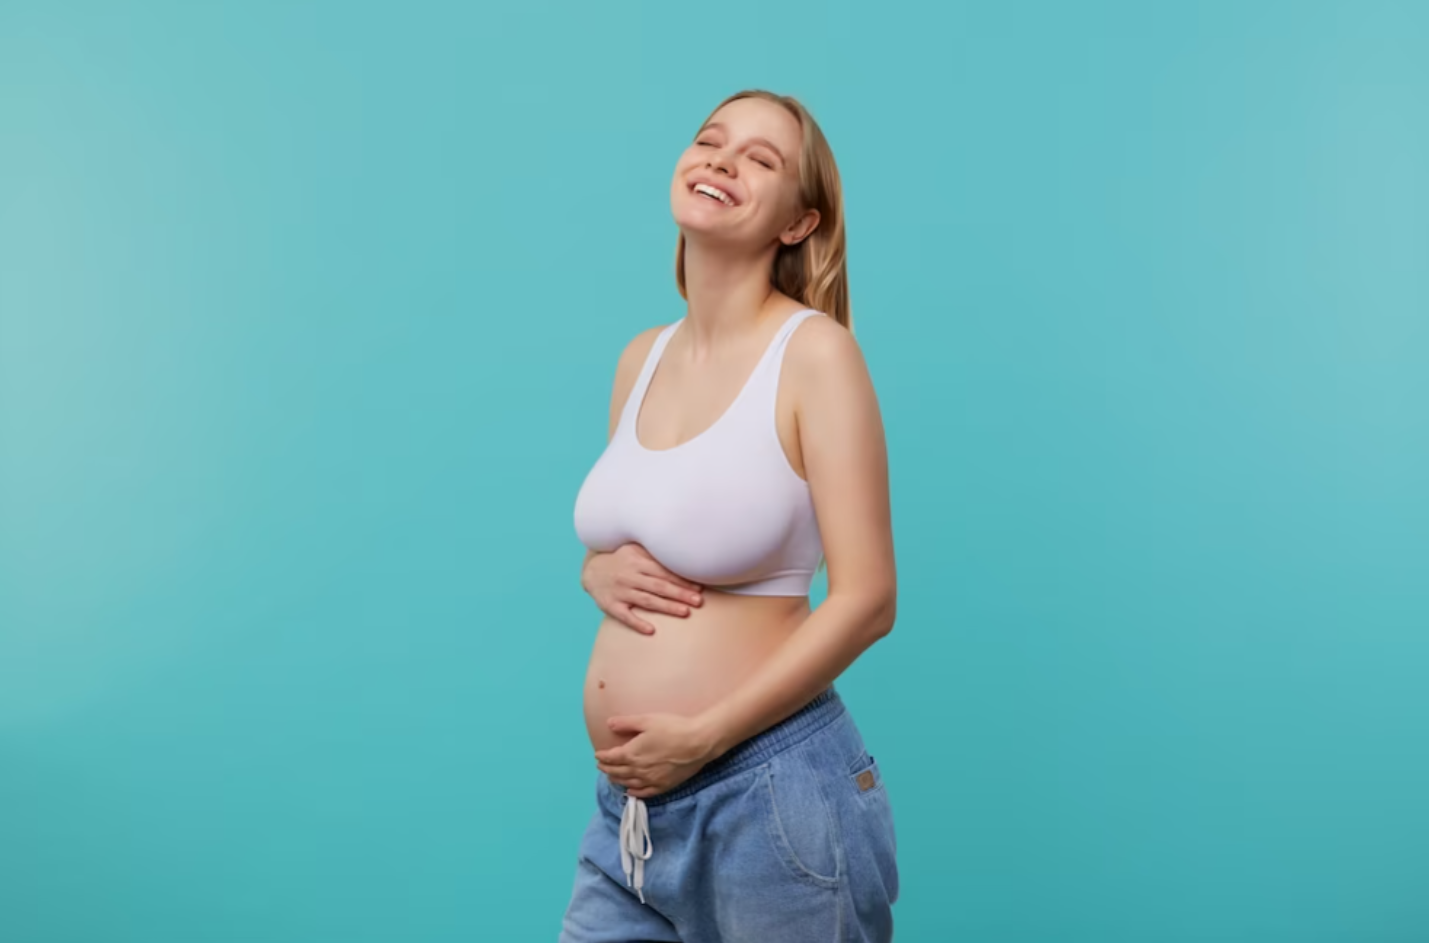 Consulta Prenatal